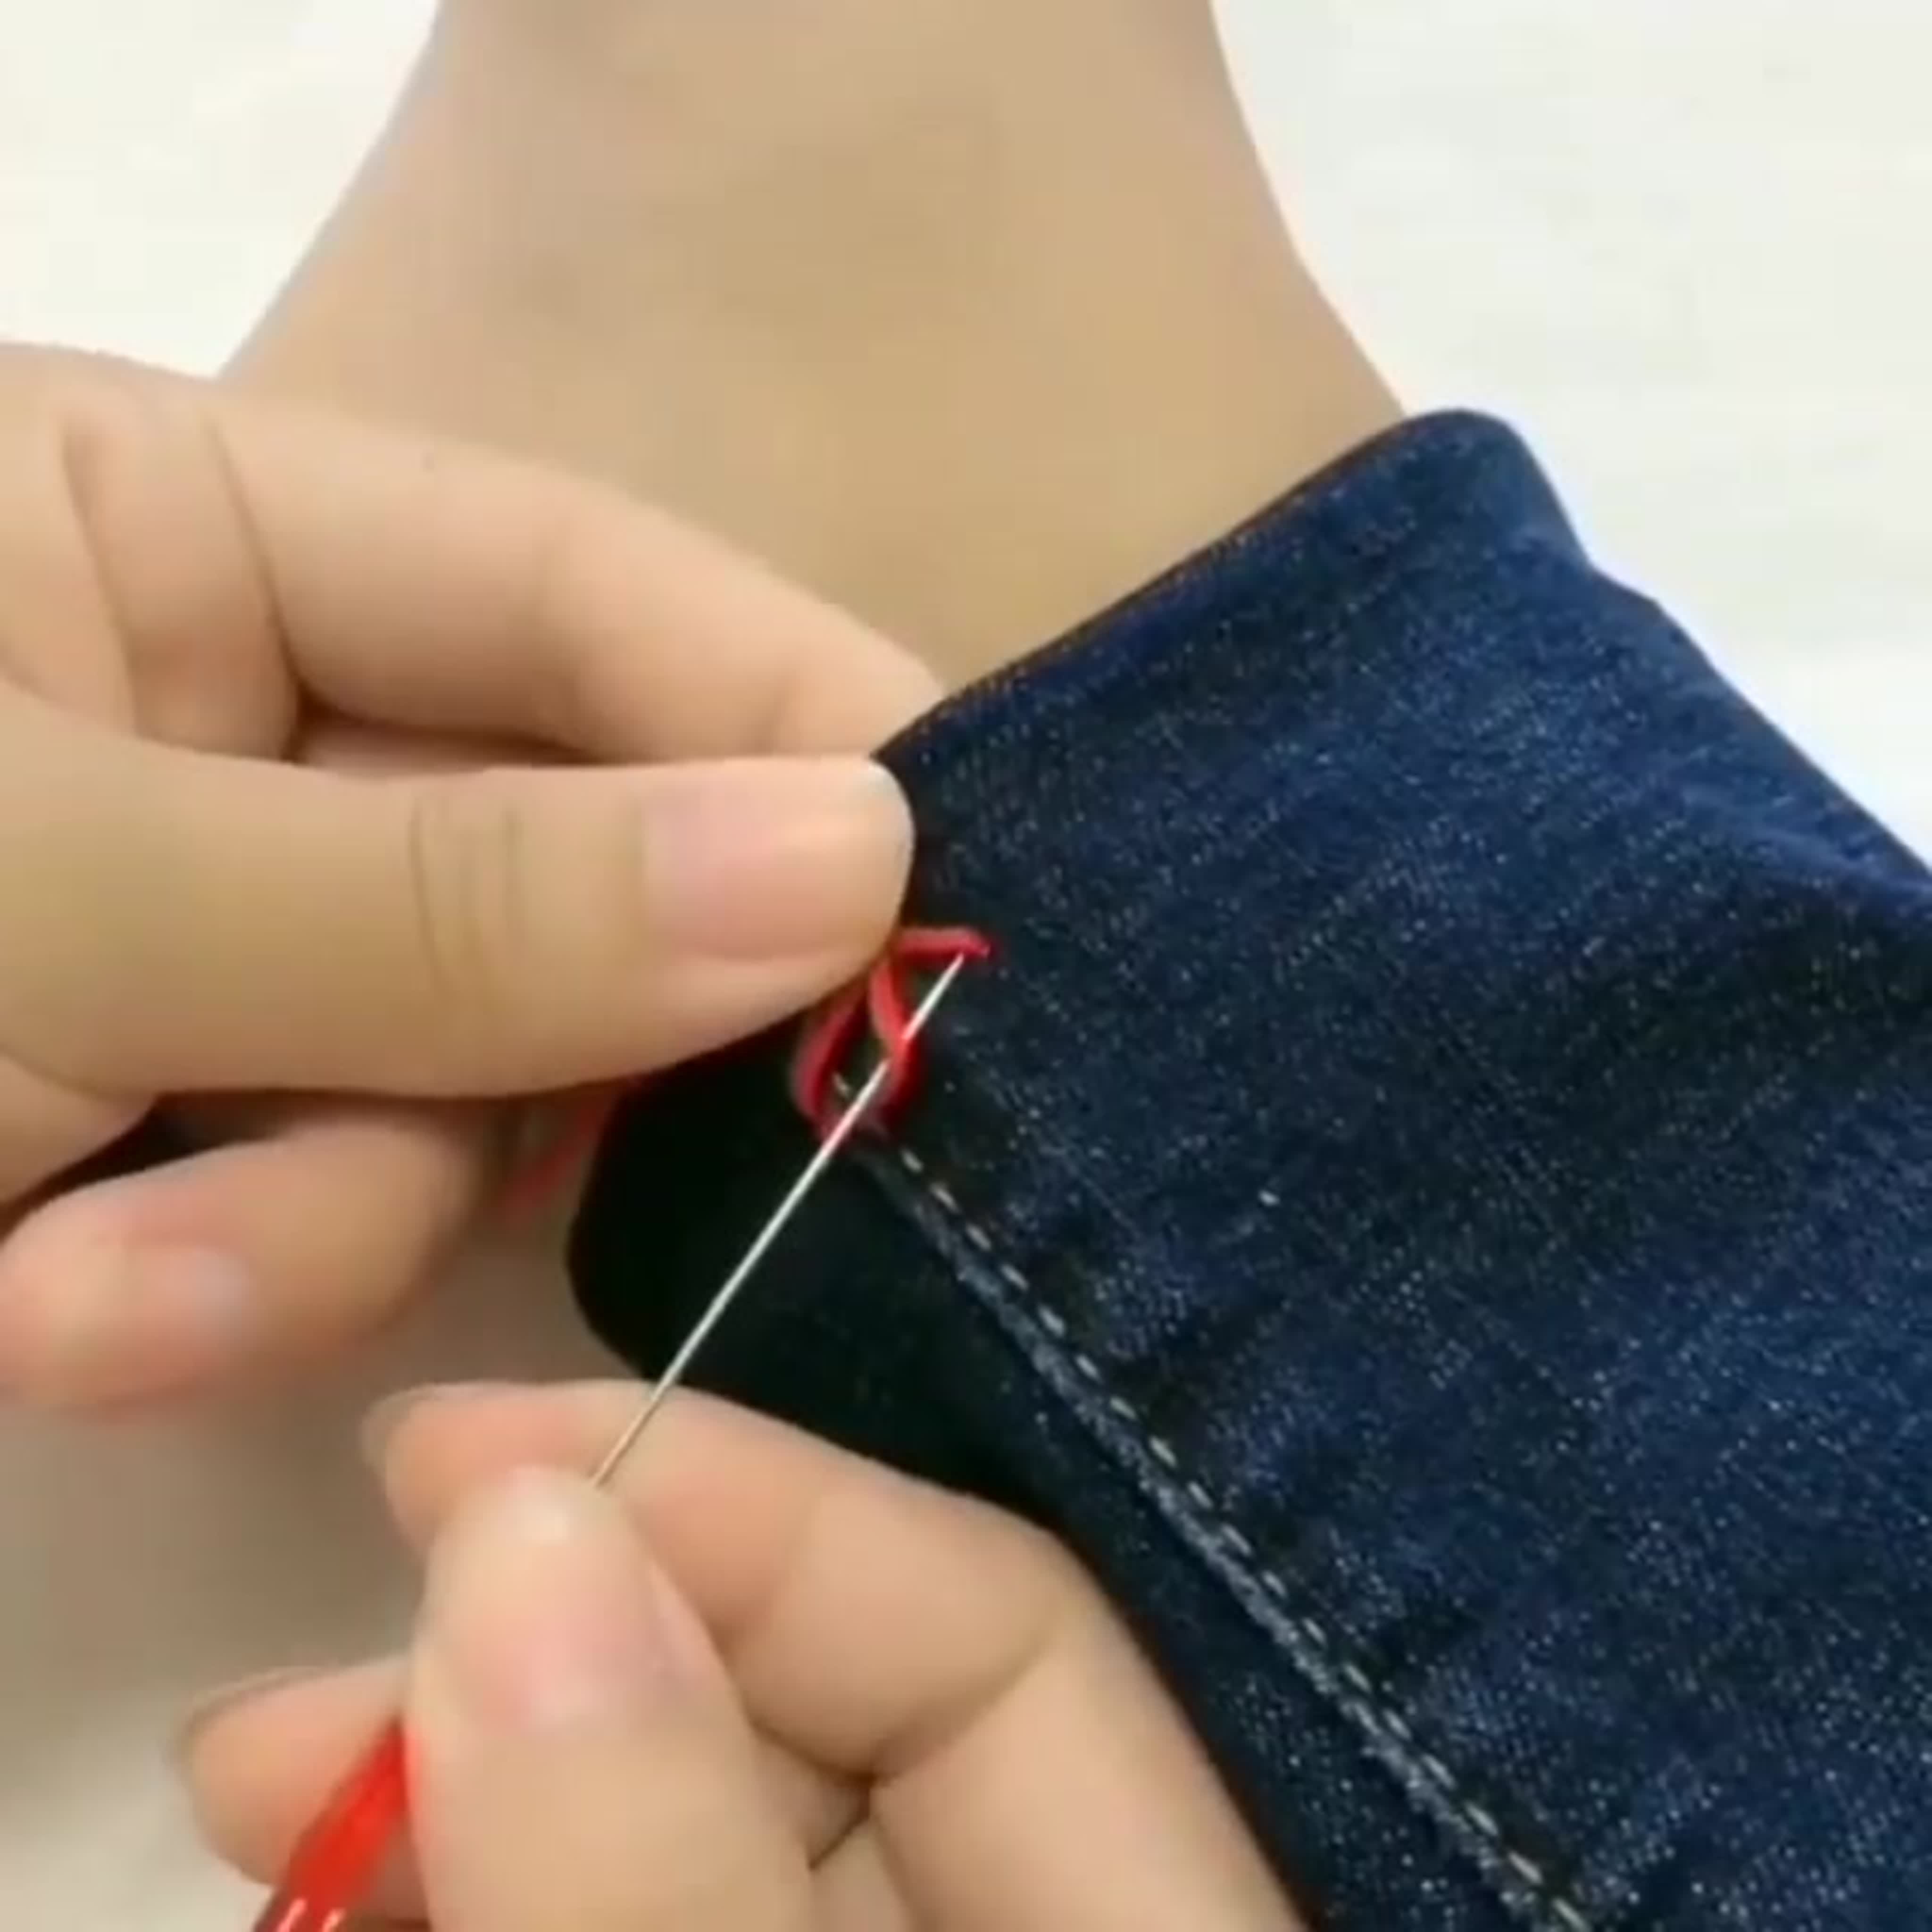 Как подшить джинсы вручную потайным швом иголкой пошагово